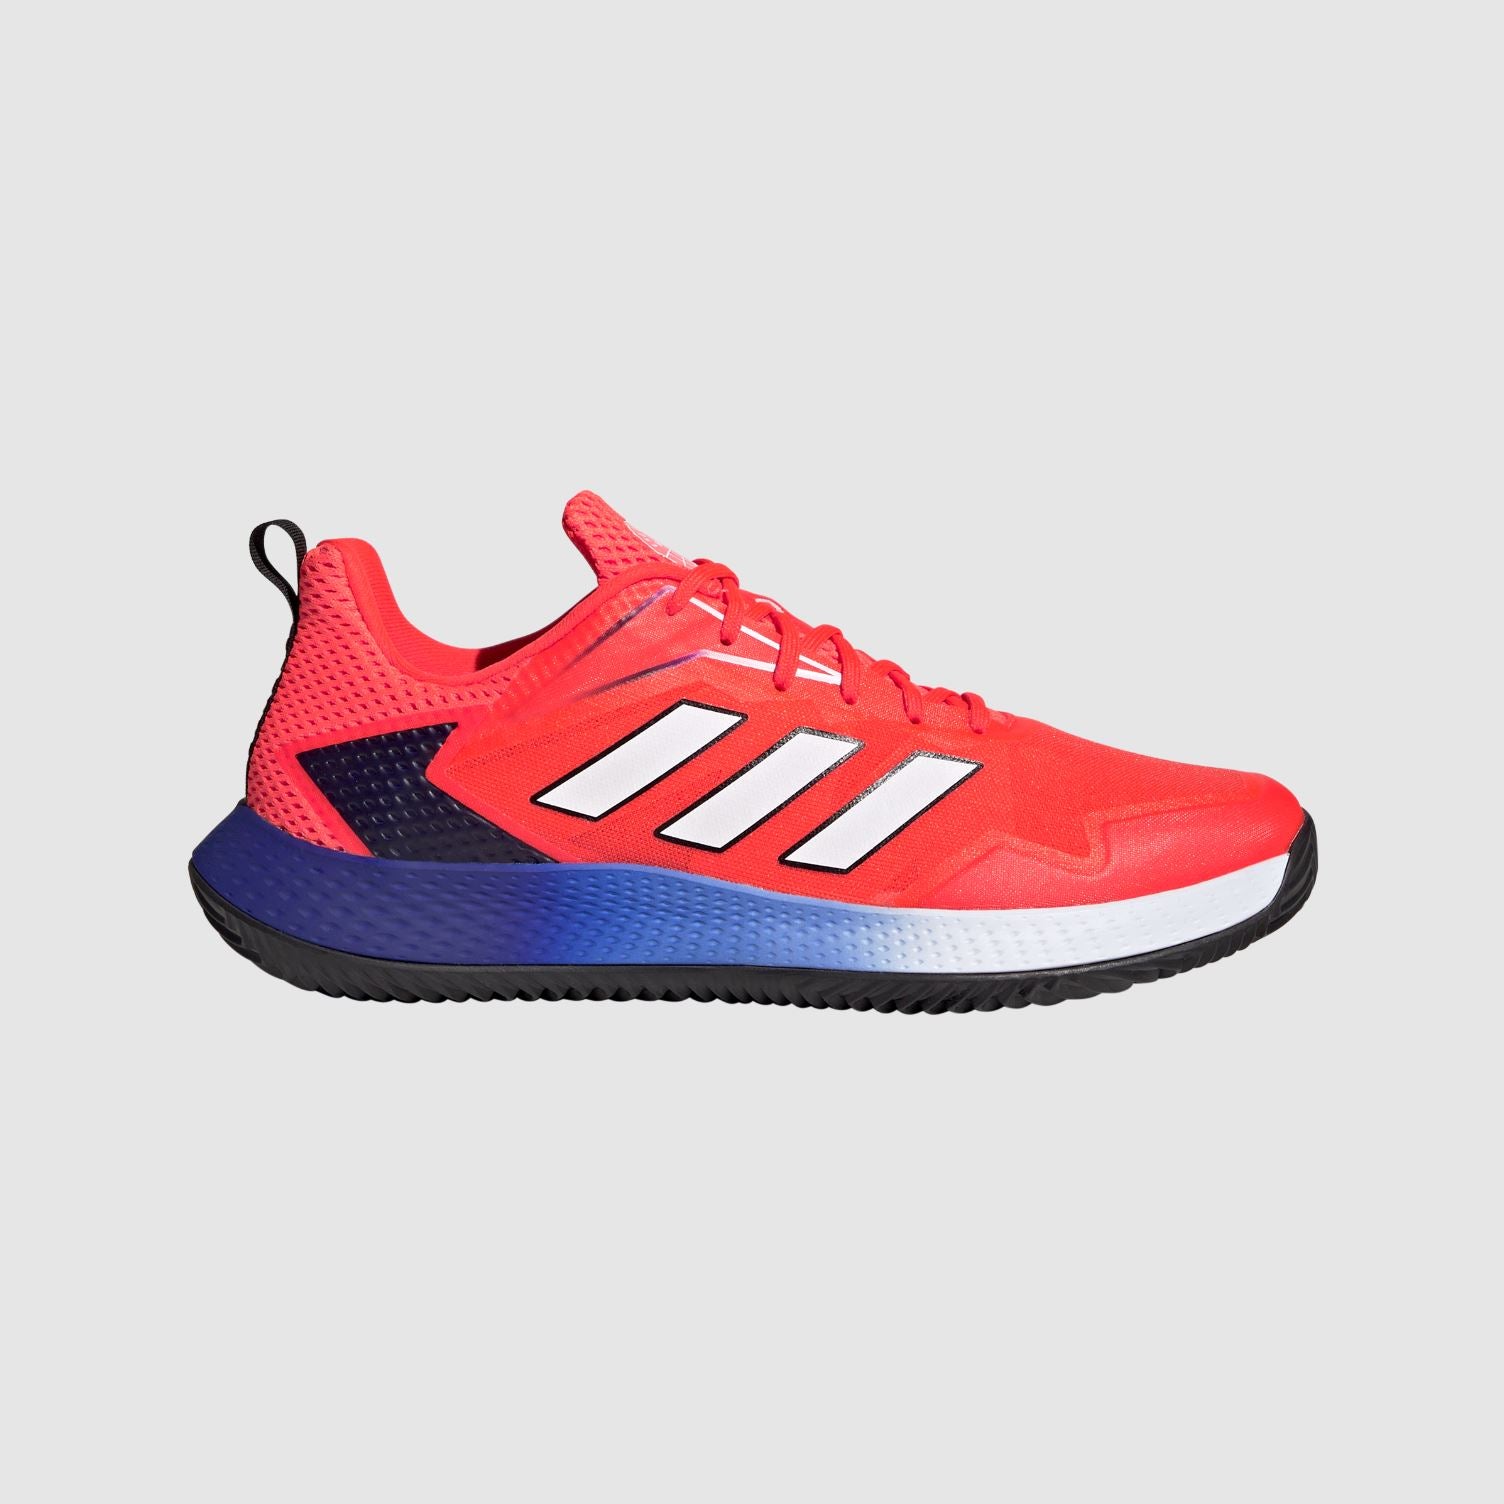 Adidas Defiant Speed CC (Mens, Rød/Blå) Padelsko - 46 2/3